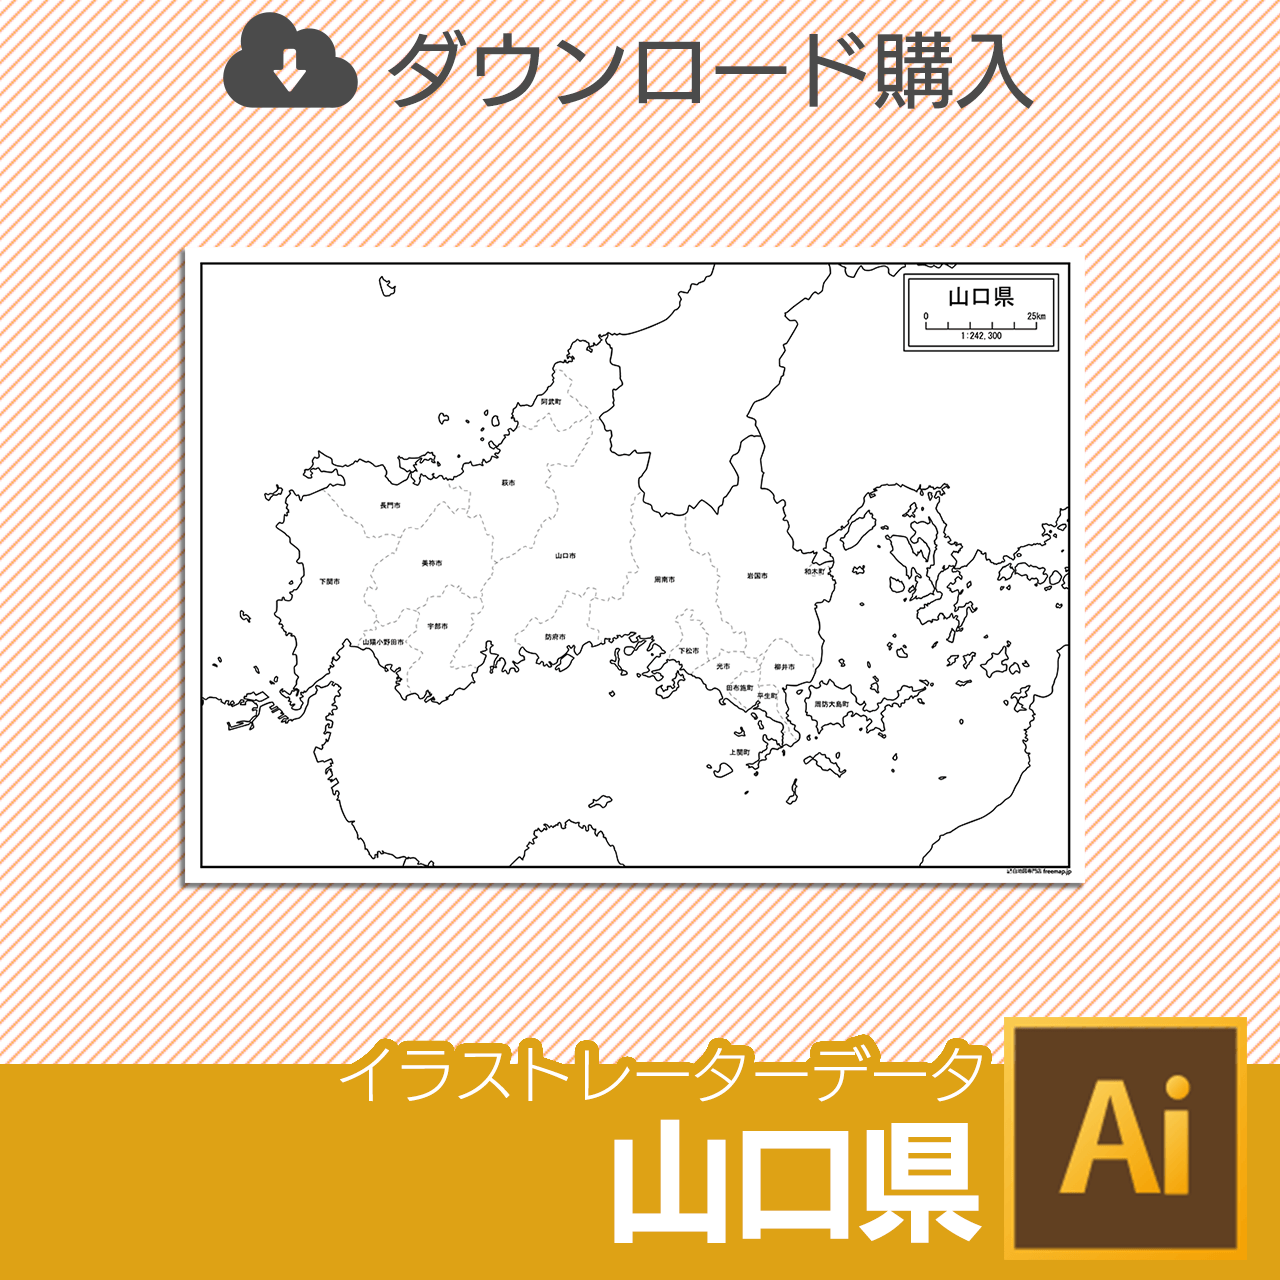 山口県のaiデータのサムネイル画像